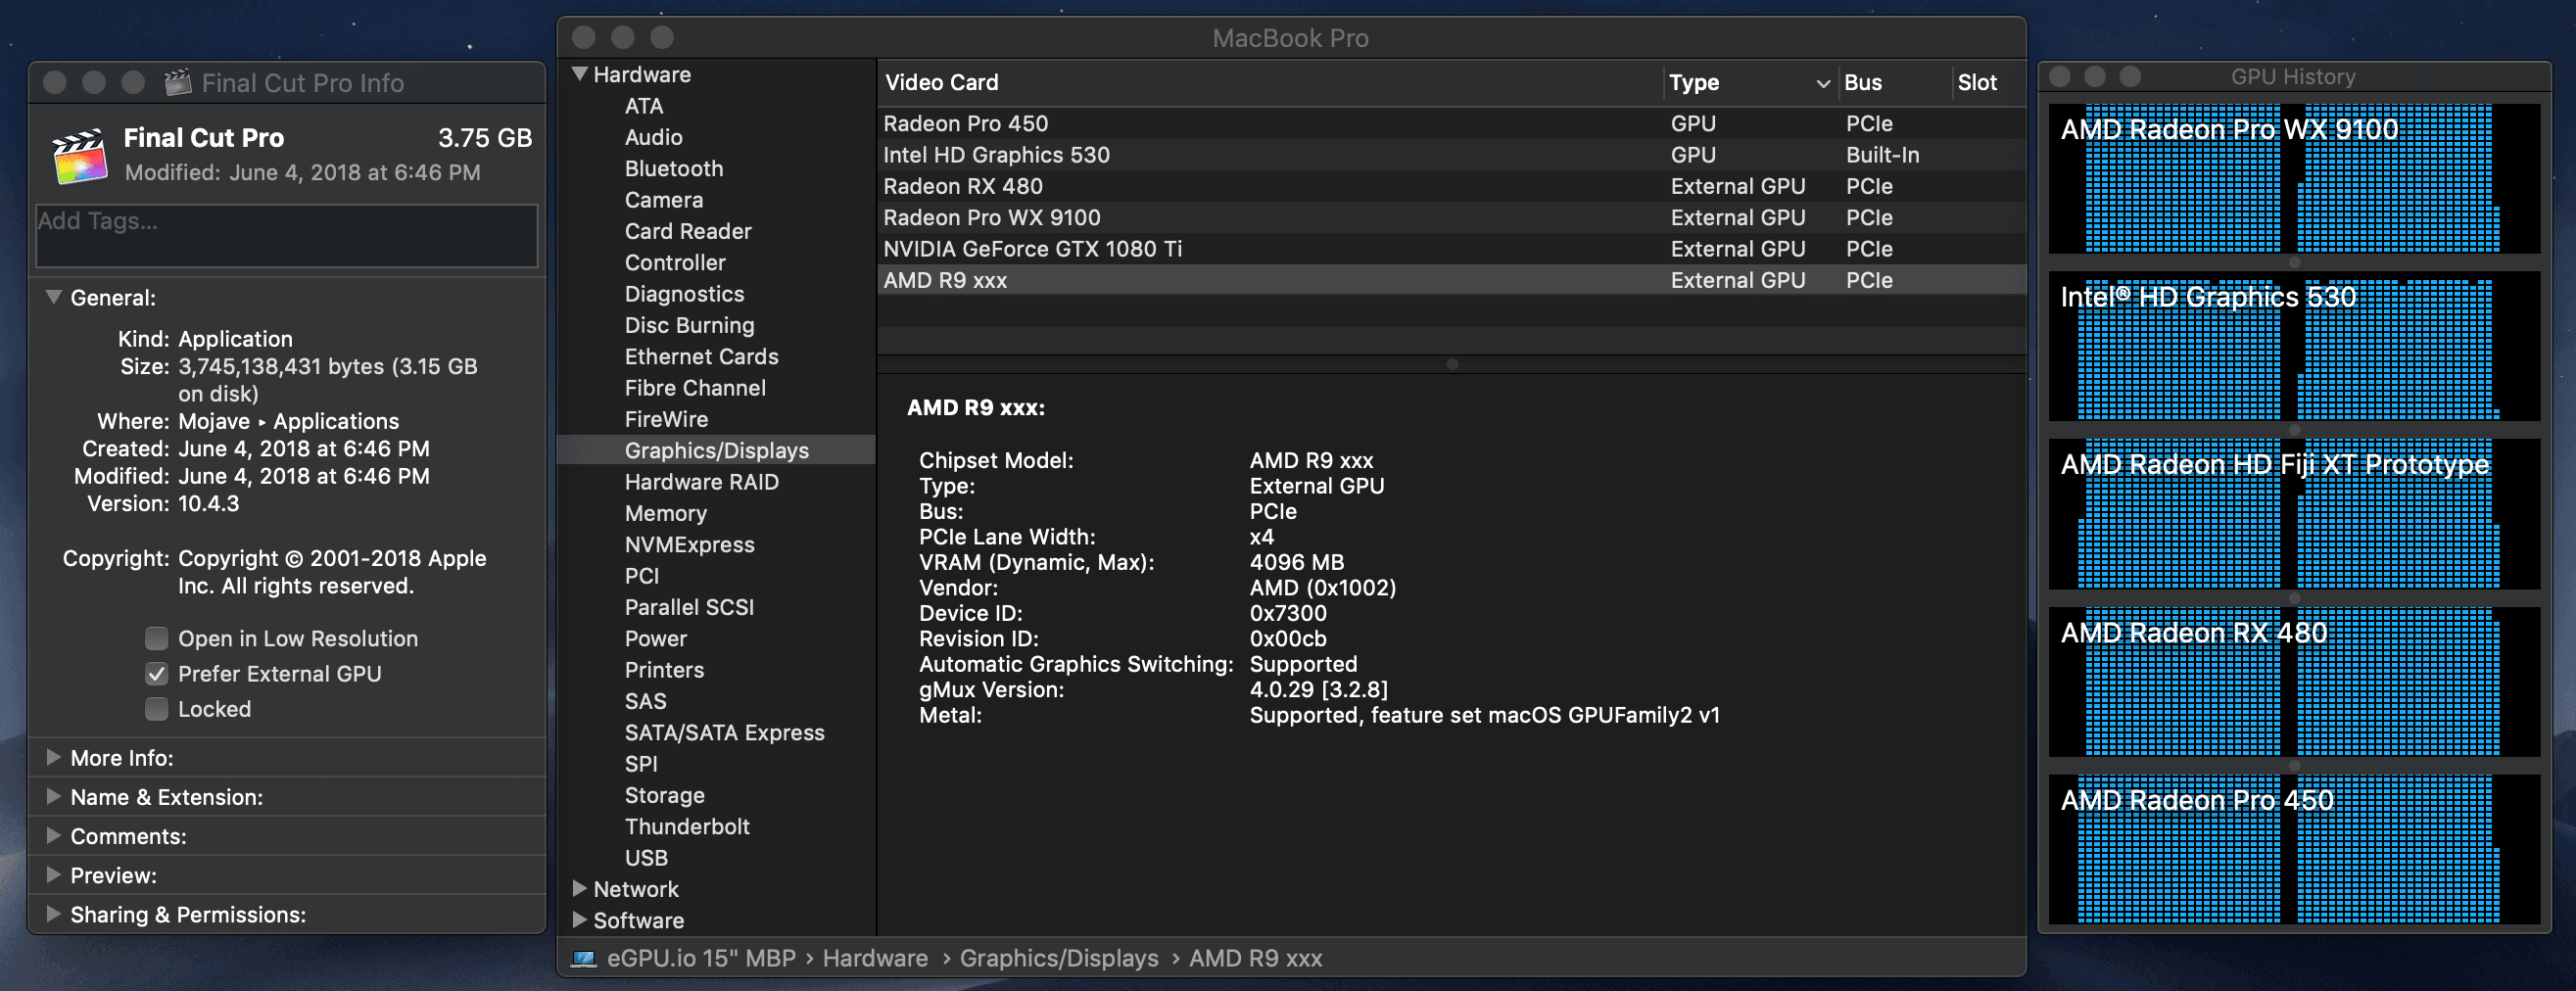 Ati Mobility Radeon 7500 Ubuntu Drivers For Mac